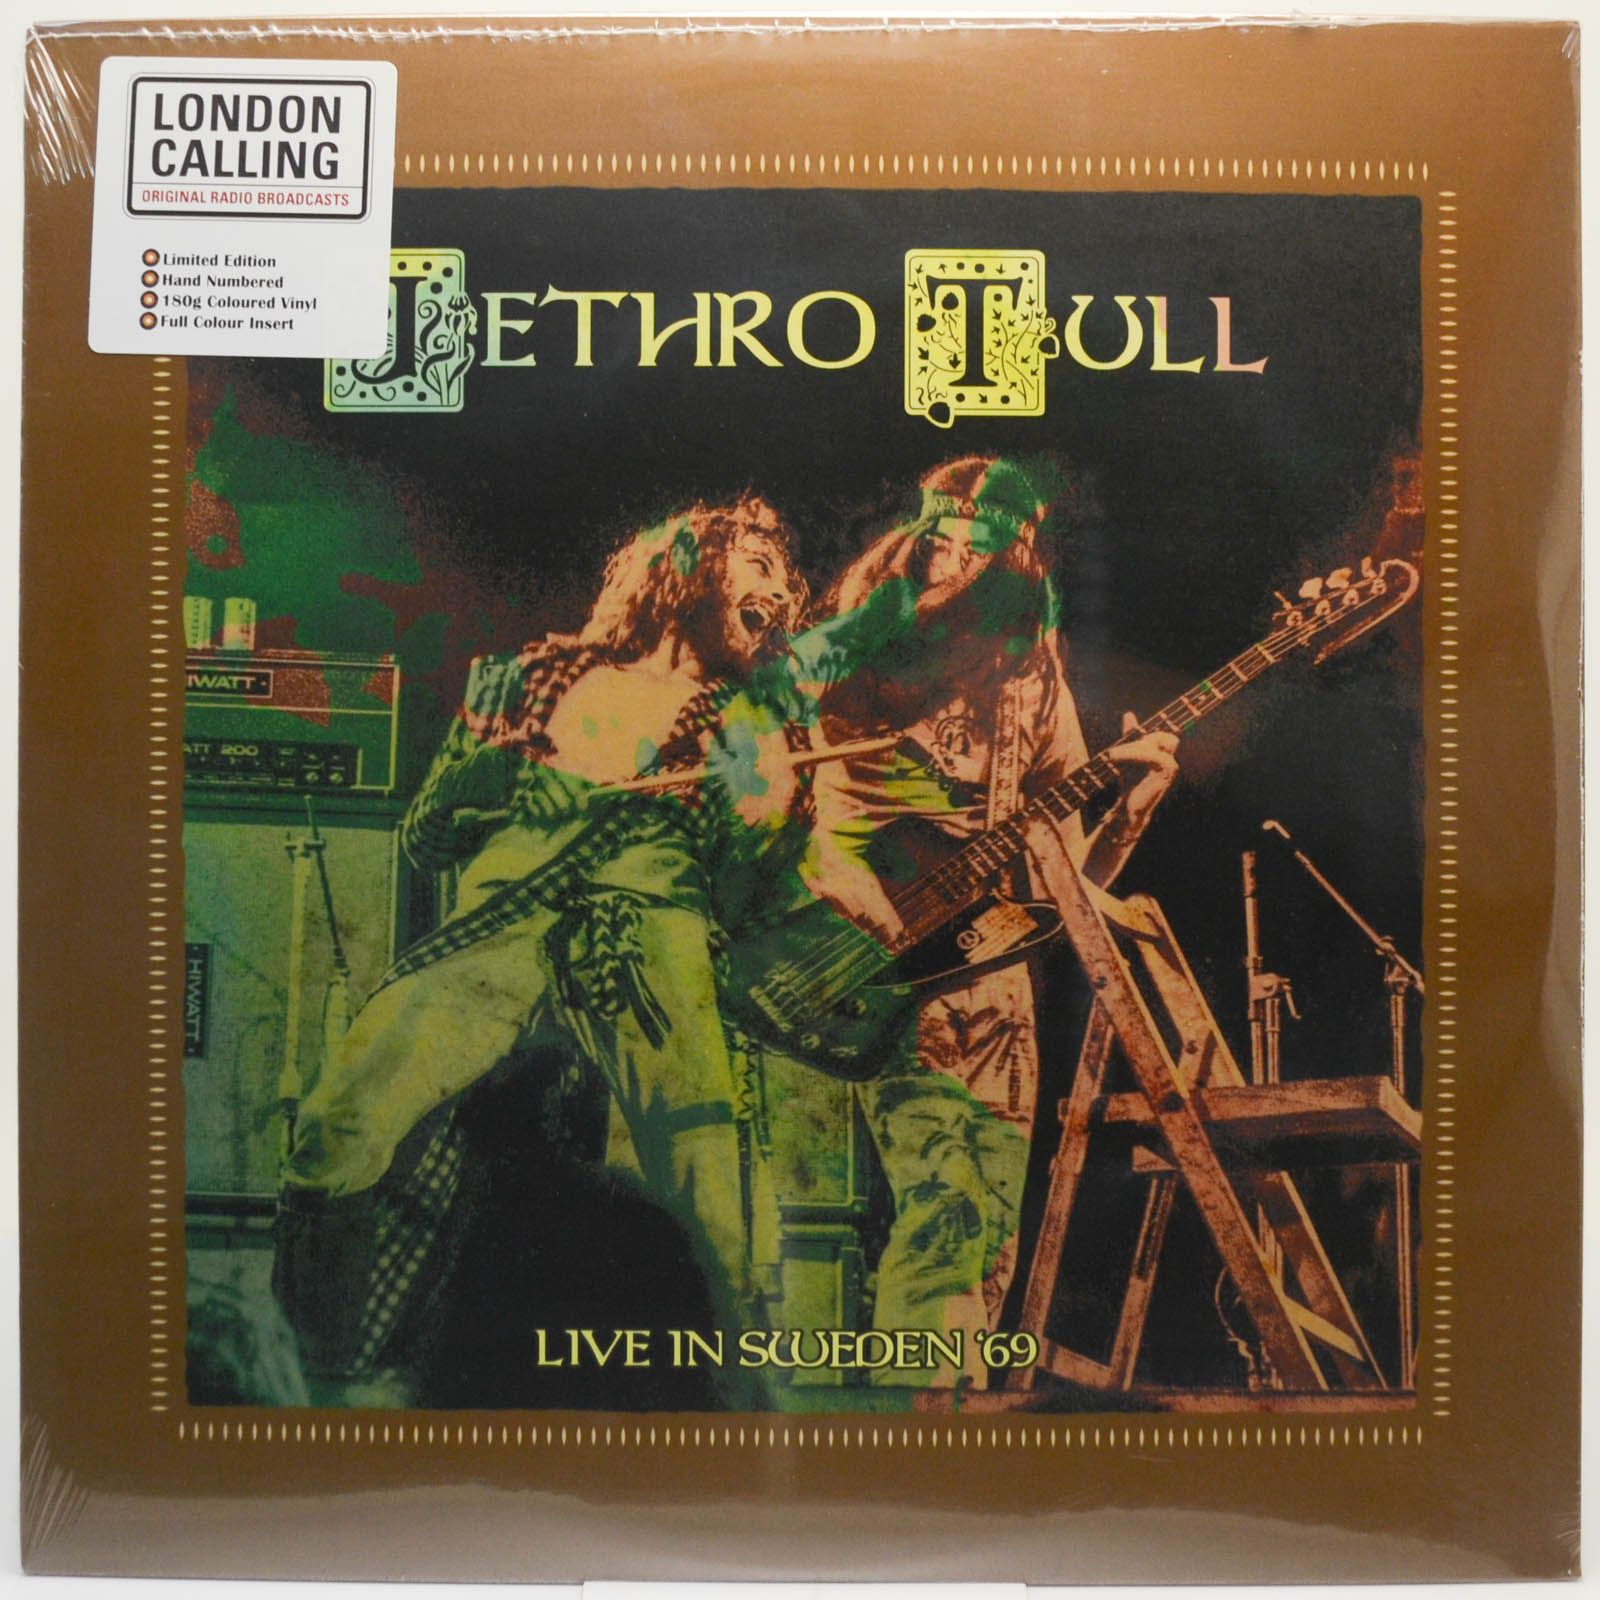 Jethro Tull — Live In Sweden '69 (UK), 2020